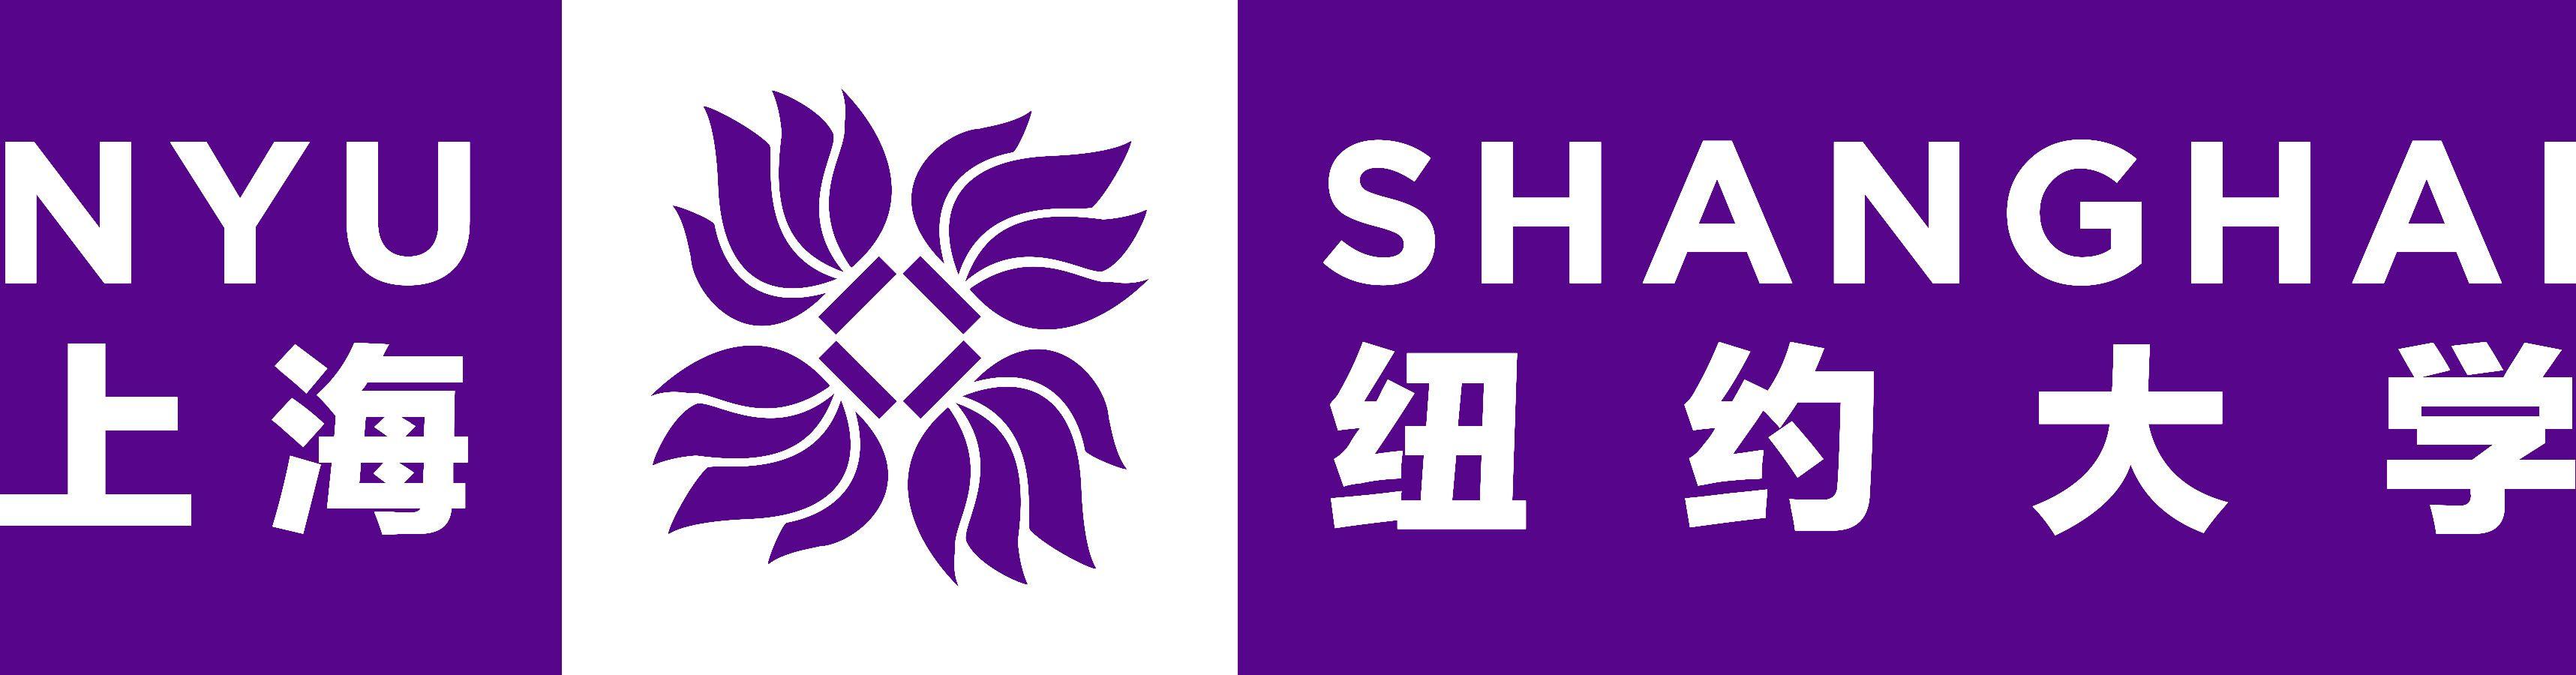 Shanghai Logo - NYU Shanghai